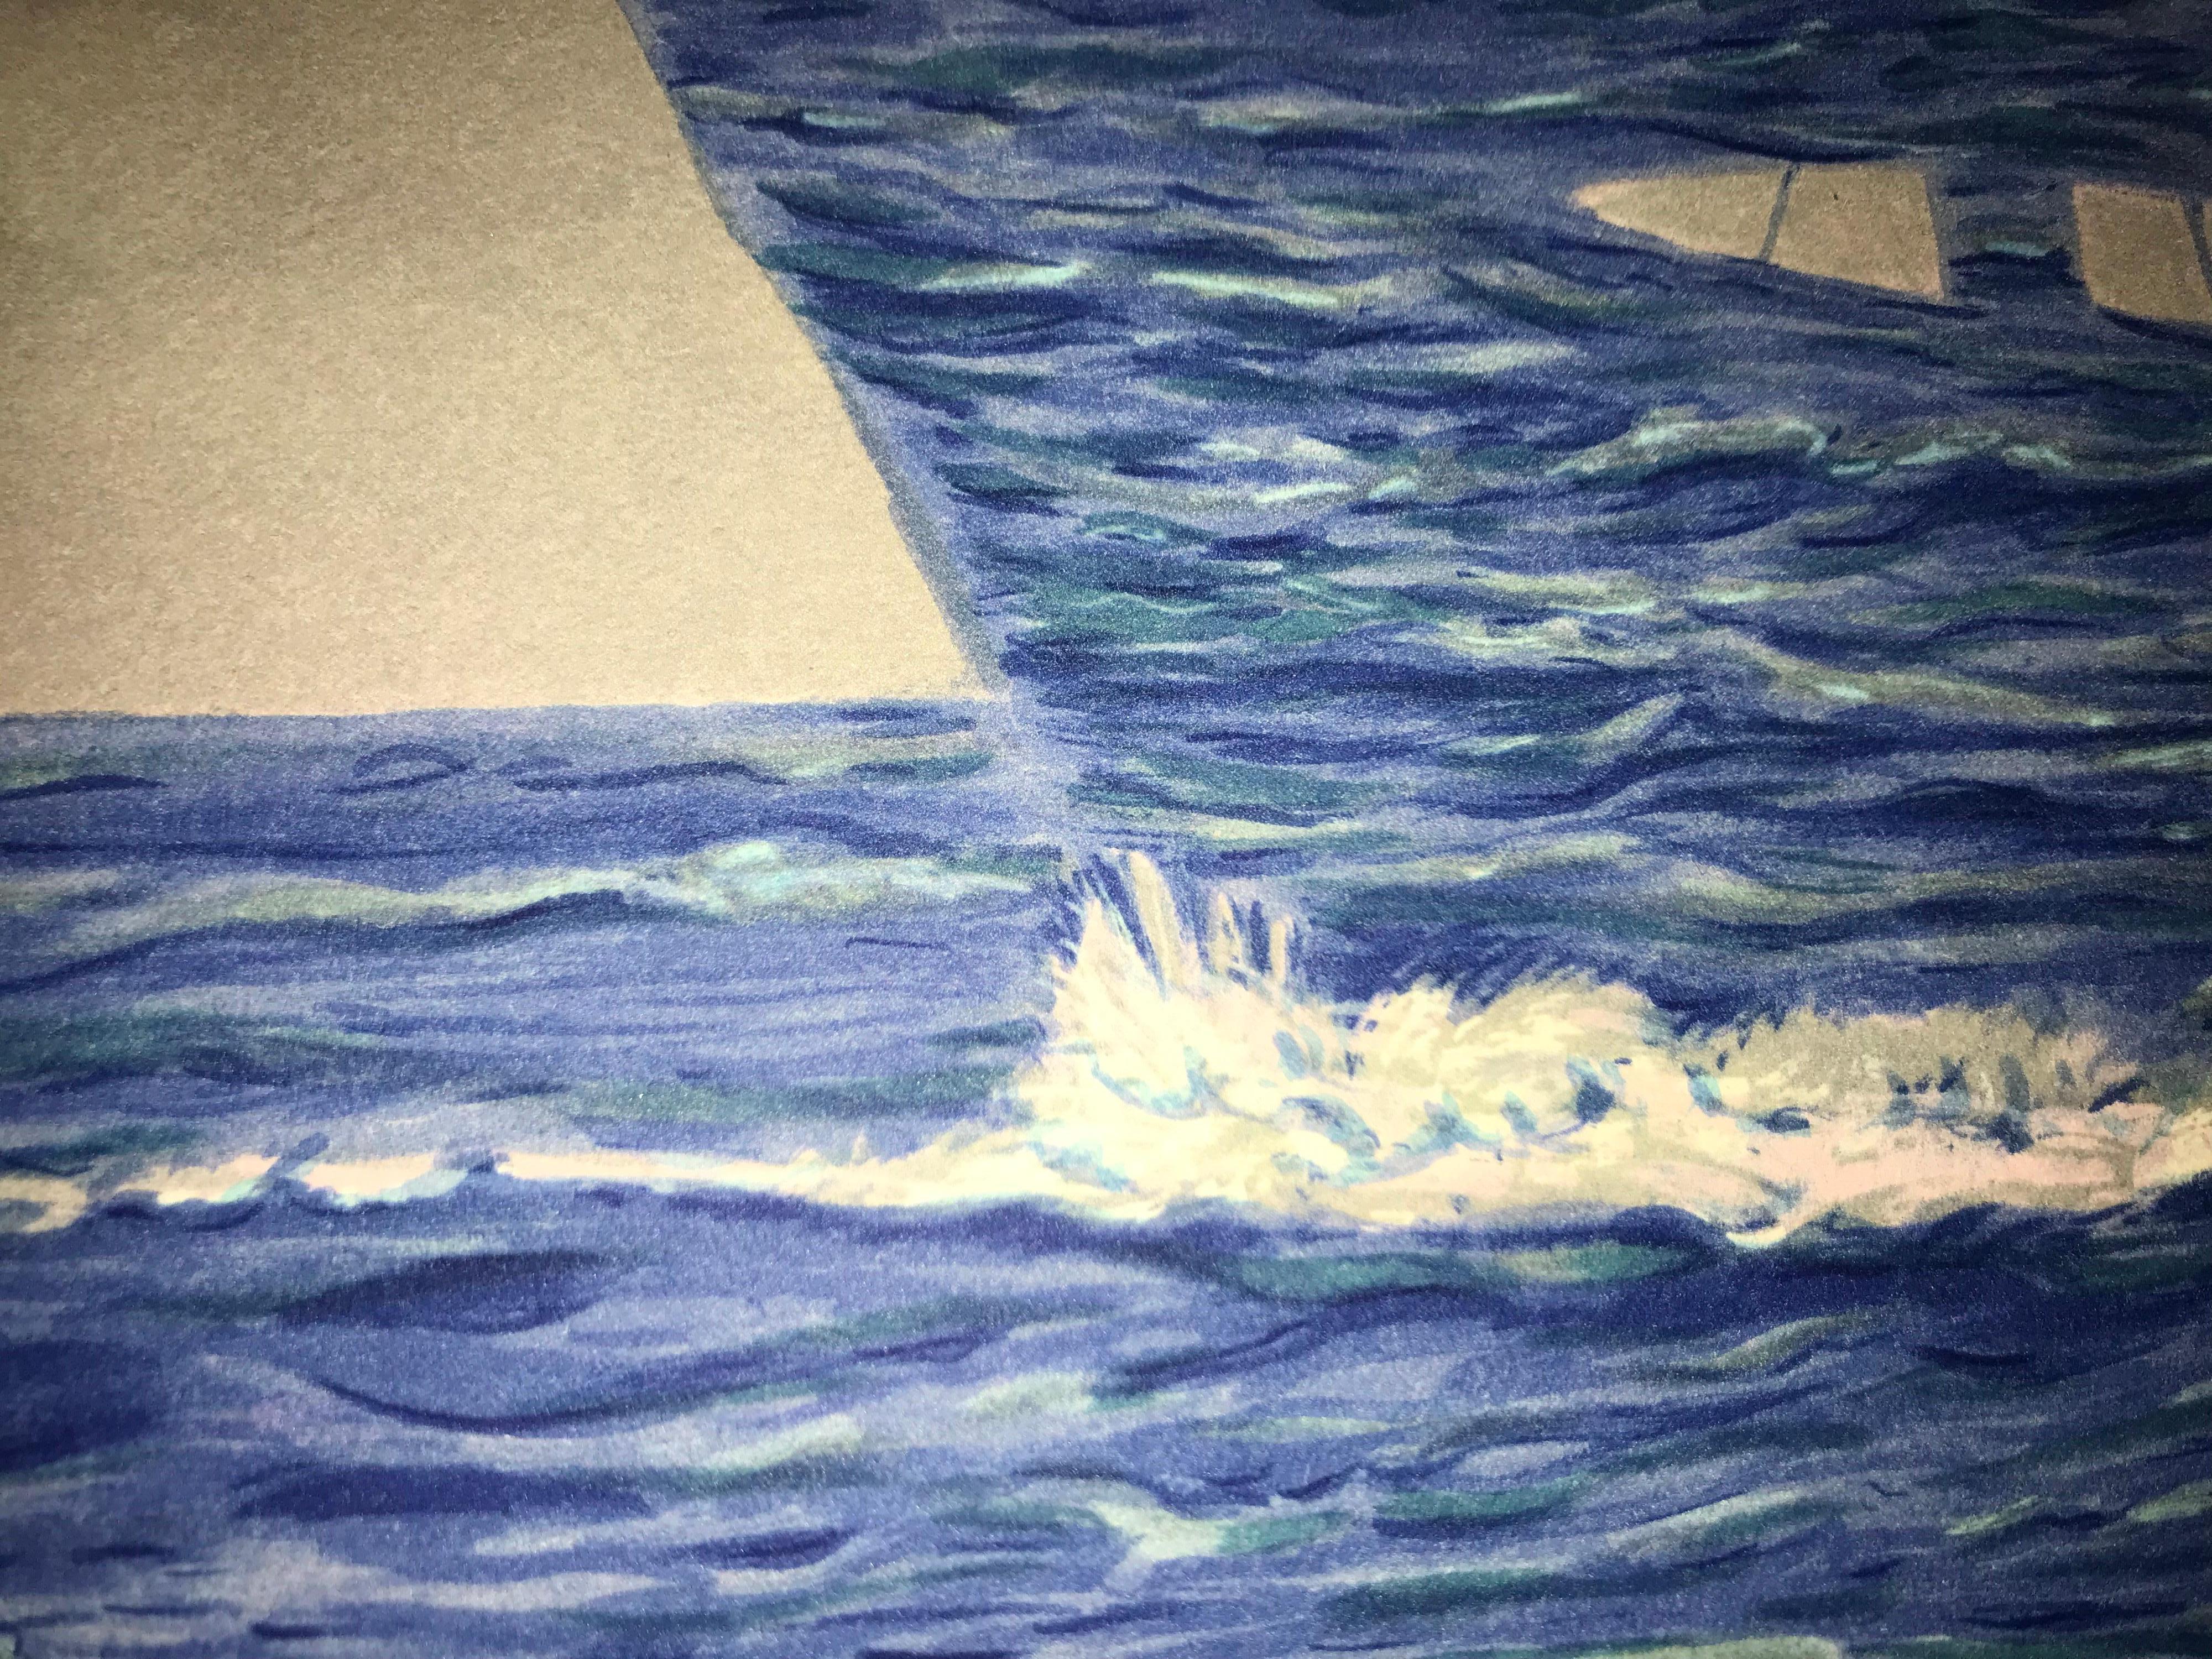 Farblithographie nach dem Öl auf Leinwand von René Magritte aus dem Jahr 1951, signiert von Magritte und nummeriert in einer Auflage von 300 Stück. 
Die Lithographie trägt die Trockenstempel der Magritte-Stiftung und der ADAGP und ist mit Bleistift